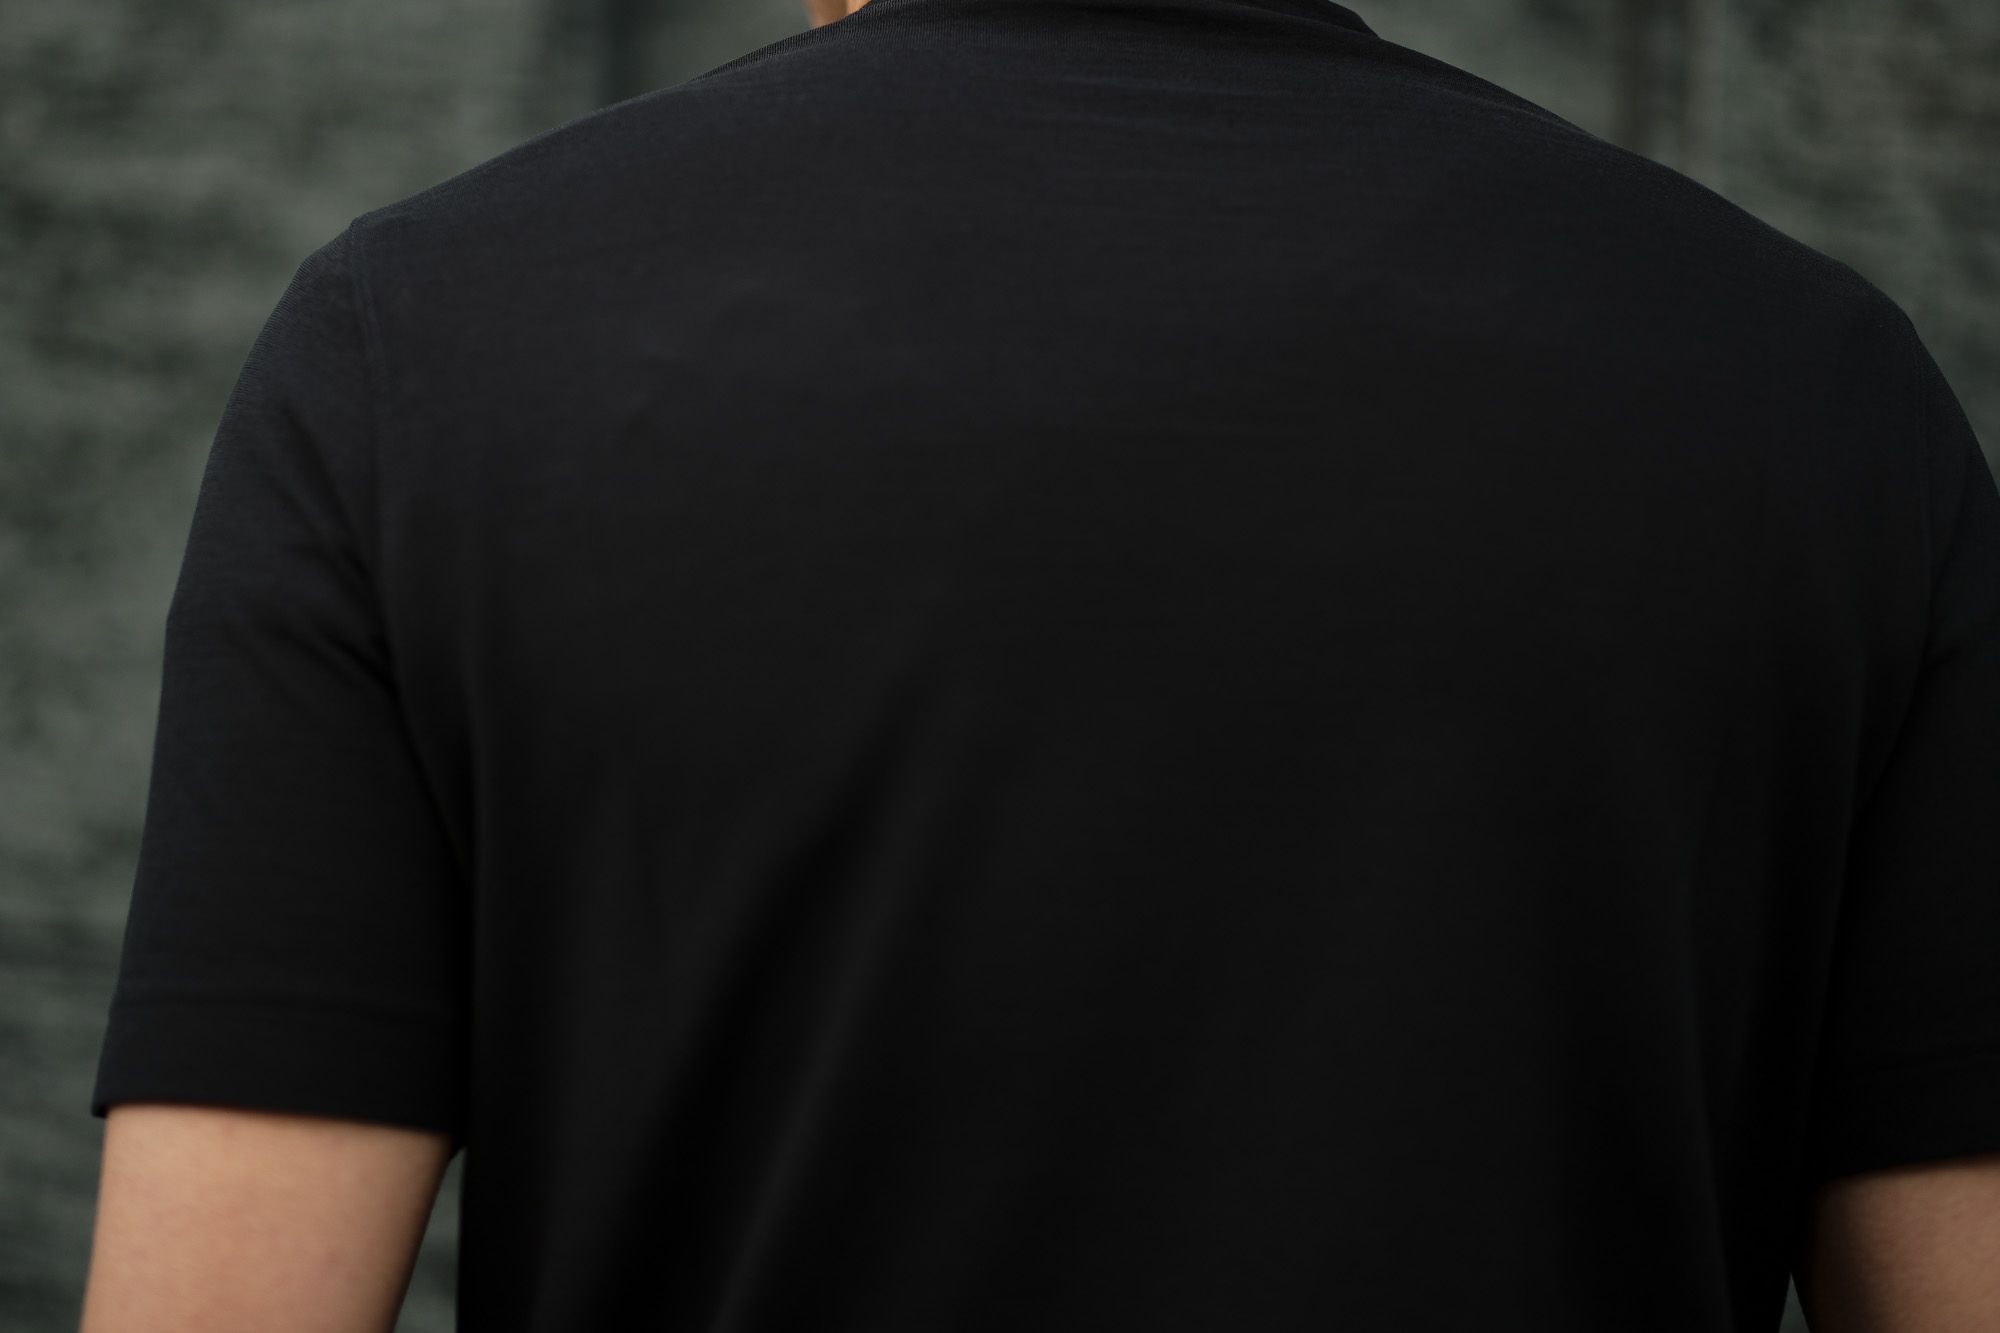 ZANONE(ザノーネ) Crew Neck T-shirt (クルーネックTシャツ) ice cotton アイスコットン Tシャツ BLACK (ブラック・Z0015) MADE IN ITALY(イタリア製) 2020 春夏 【ご予約受付中】愛知 名古屋 altoediritto アルトエデリット tee 夏Tシャツ